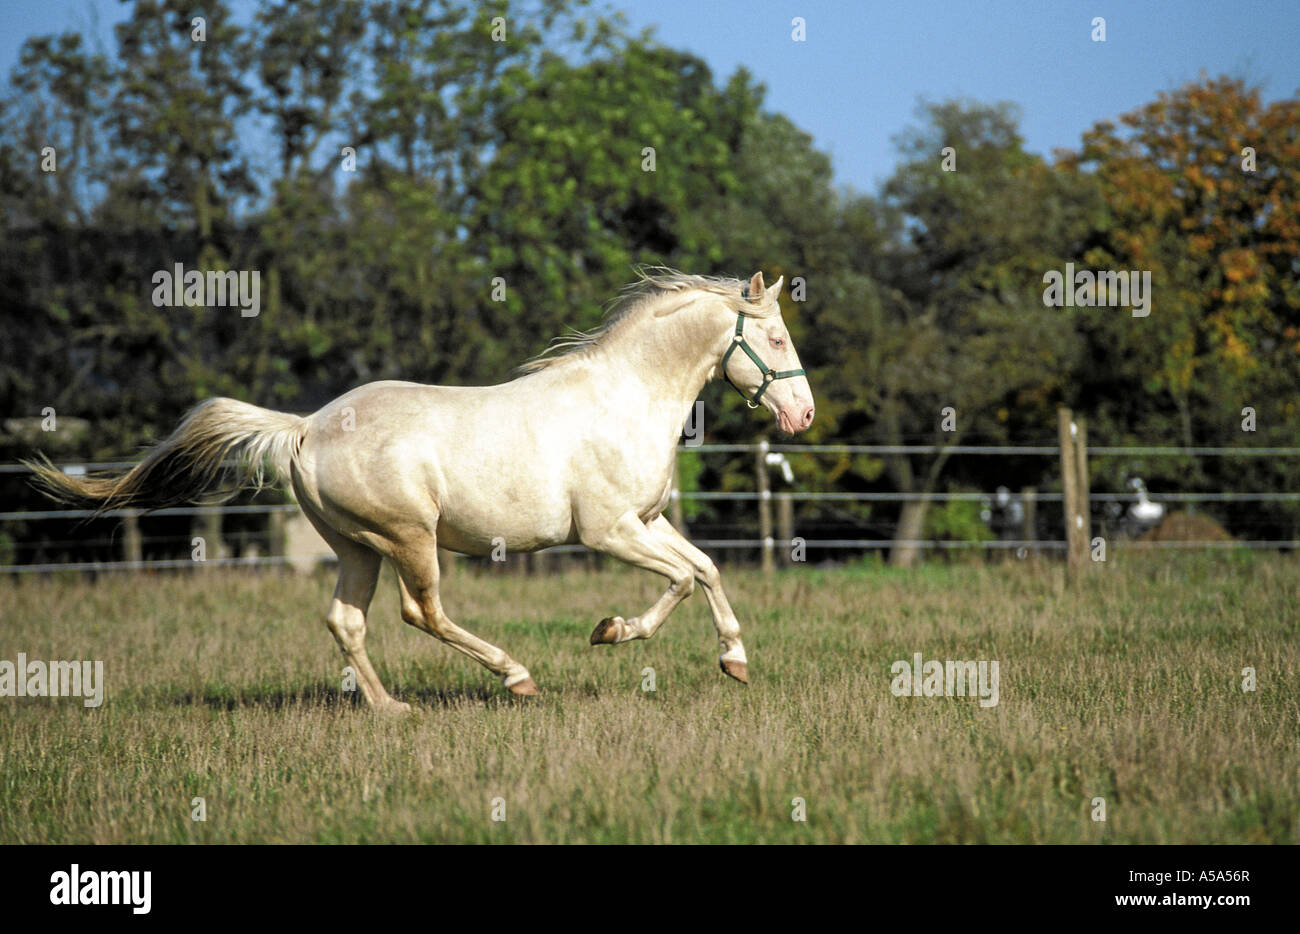 Aztekenpferd Caballo Azteka Azteca Horse Stock Photo